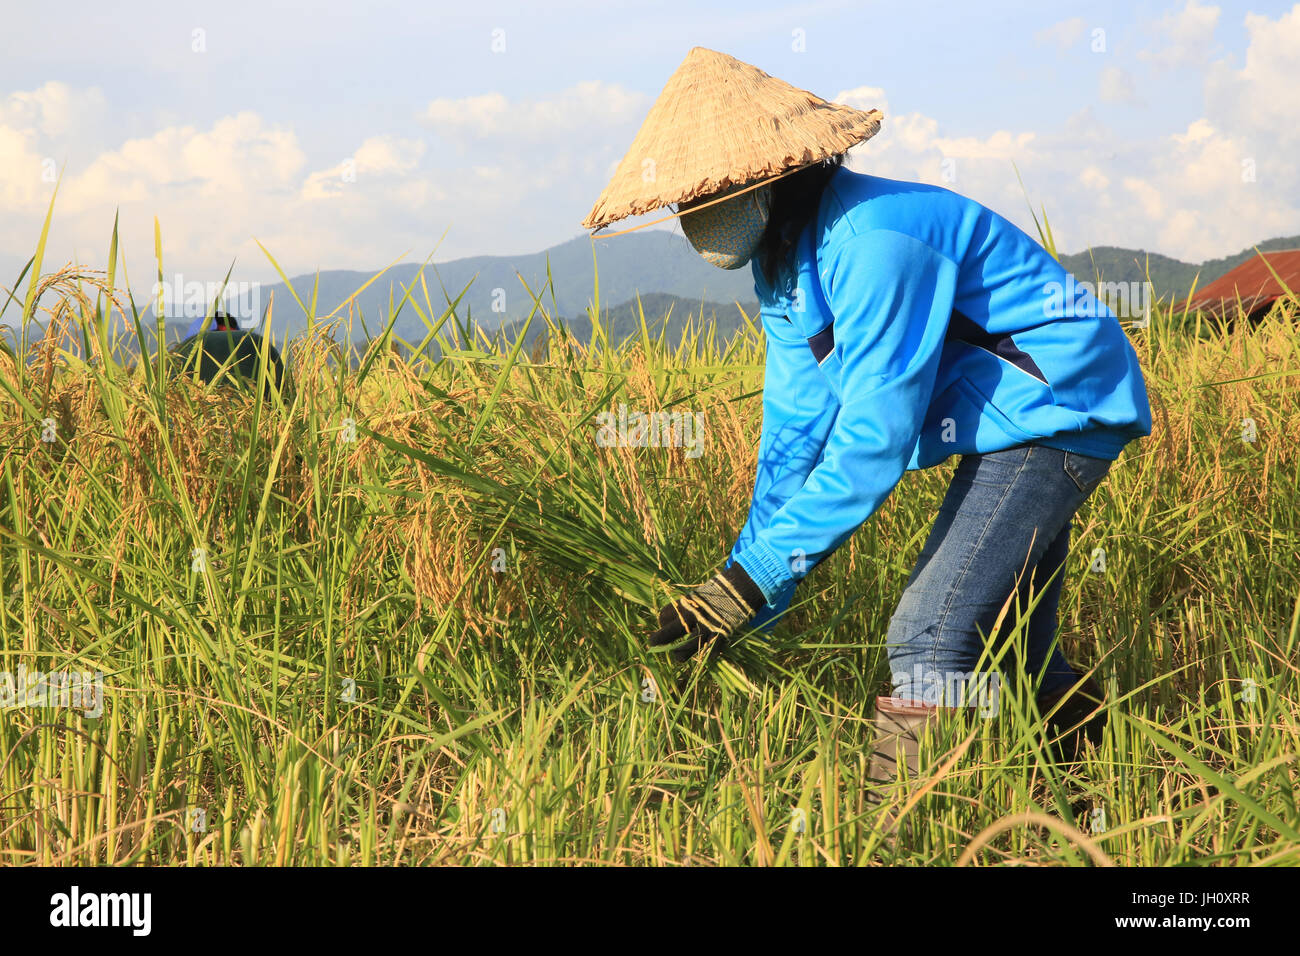 Farmer working in rice fields in rural landscape. Laos. Stock Photo